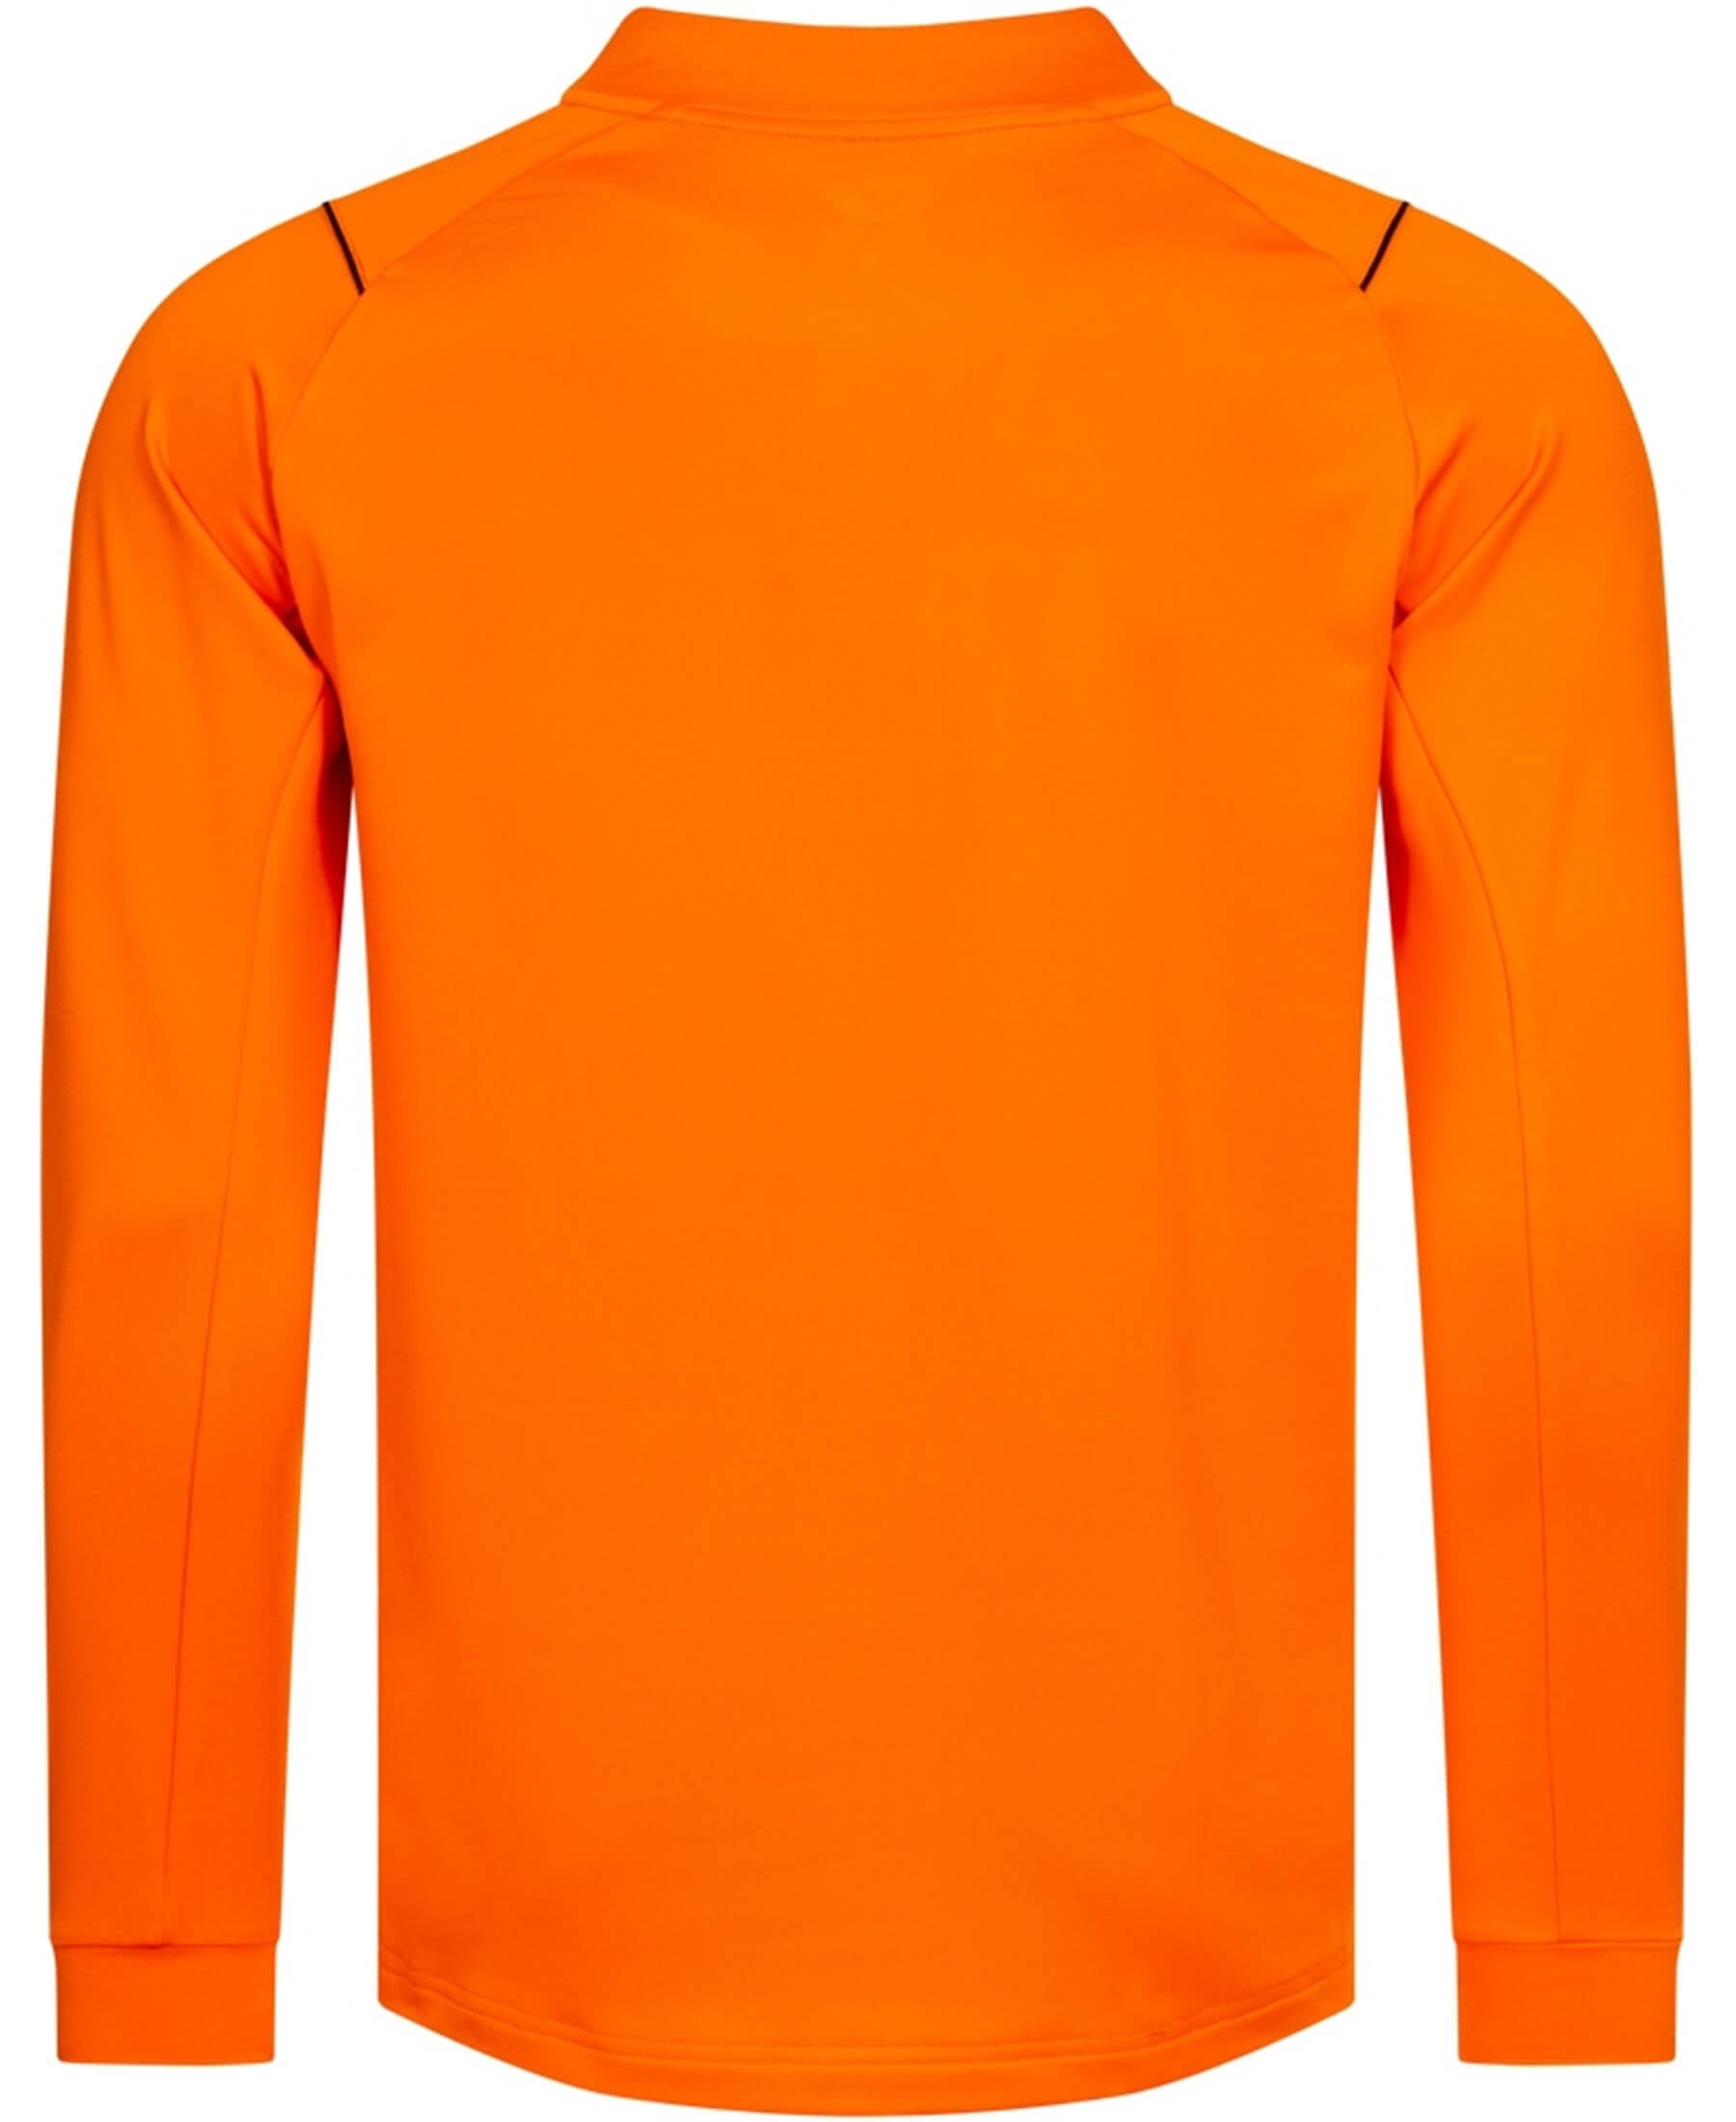 Erleben Sie das offizielle Castore Glasgow Rangers FC 1/4-Zip Sweatshirt in auffälligem Orange (Artikelnummer: TM0511-Orange) bei SHOP4TEAMSPORT. Dieses hochwertige Sweatshirt bietet maximalen Komfort und Stil für eingefleischte Fans. Zeigen Sie Ihre Leidenschaft im Stadion und im Alltag. Ein absolutes Must-have für Anhänger des Rangers FC. Die ideale Verschmelzung von Mode und Teamgeist – jetzt erhältlich!